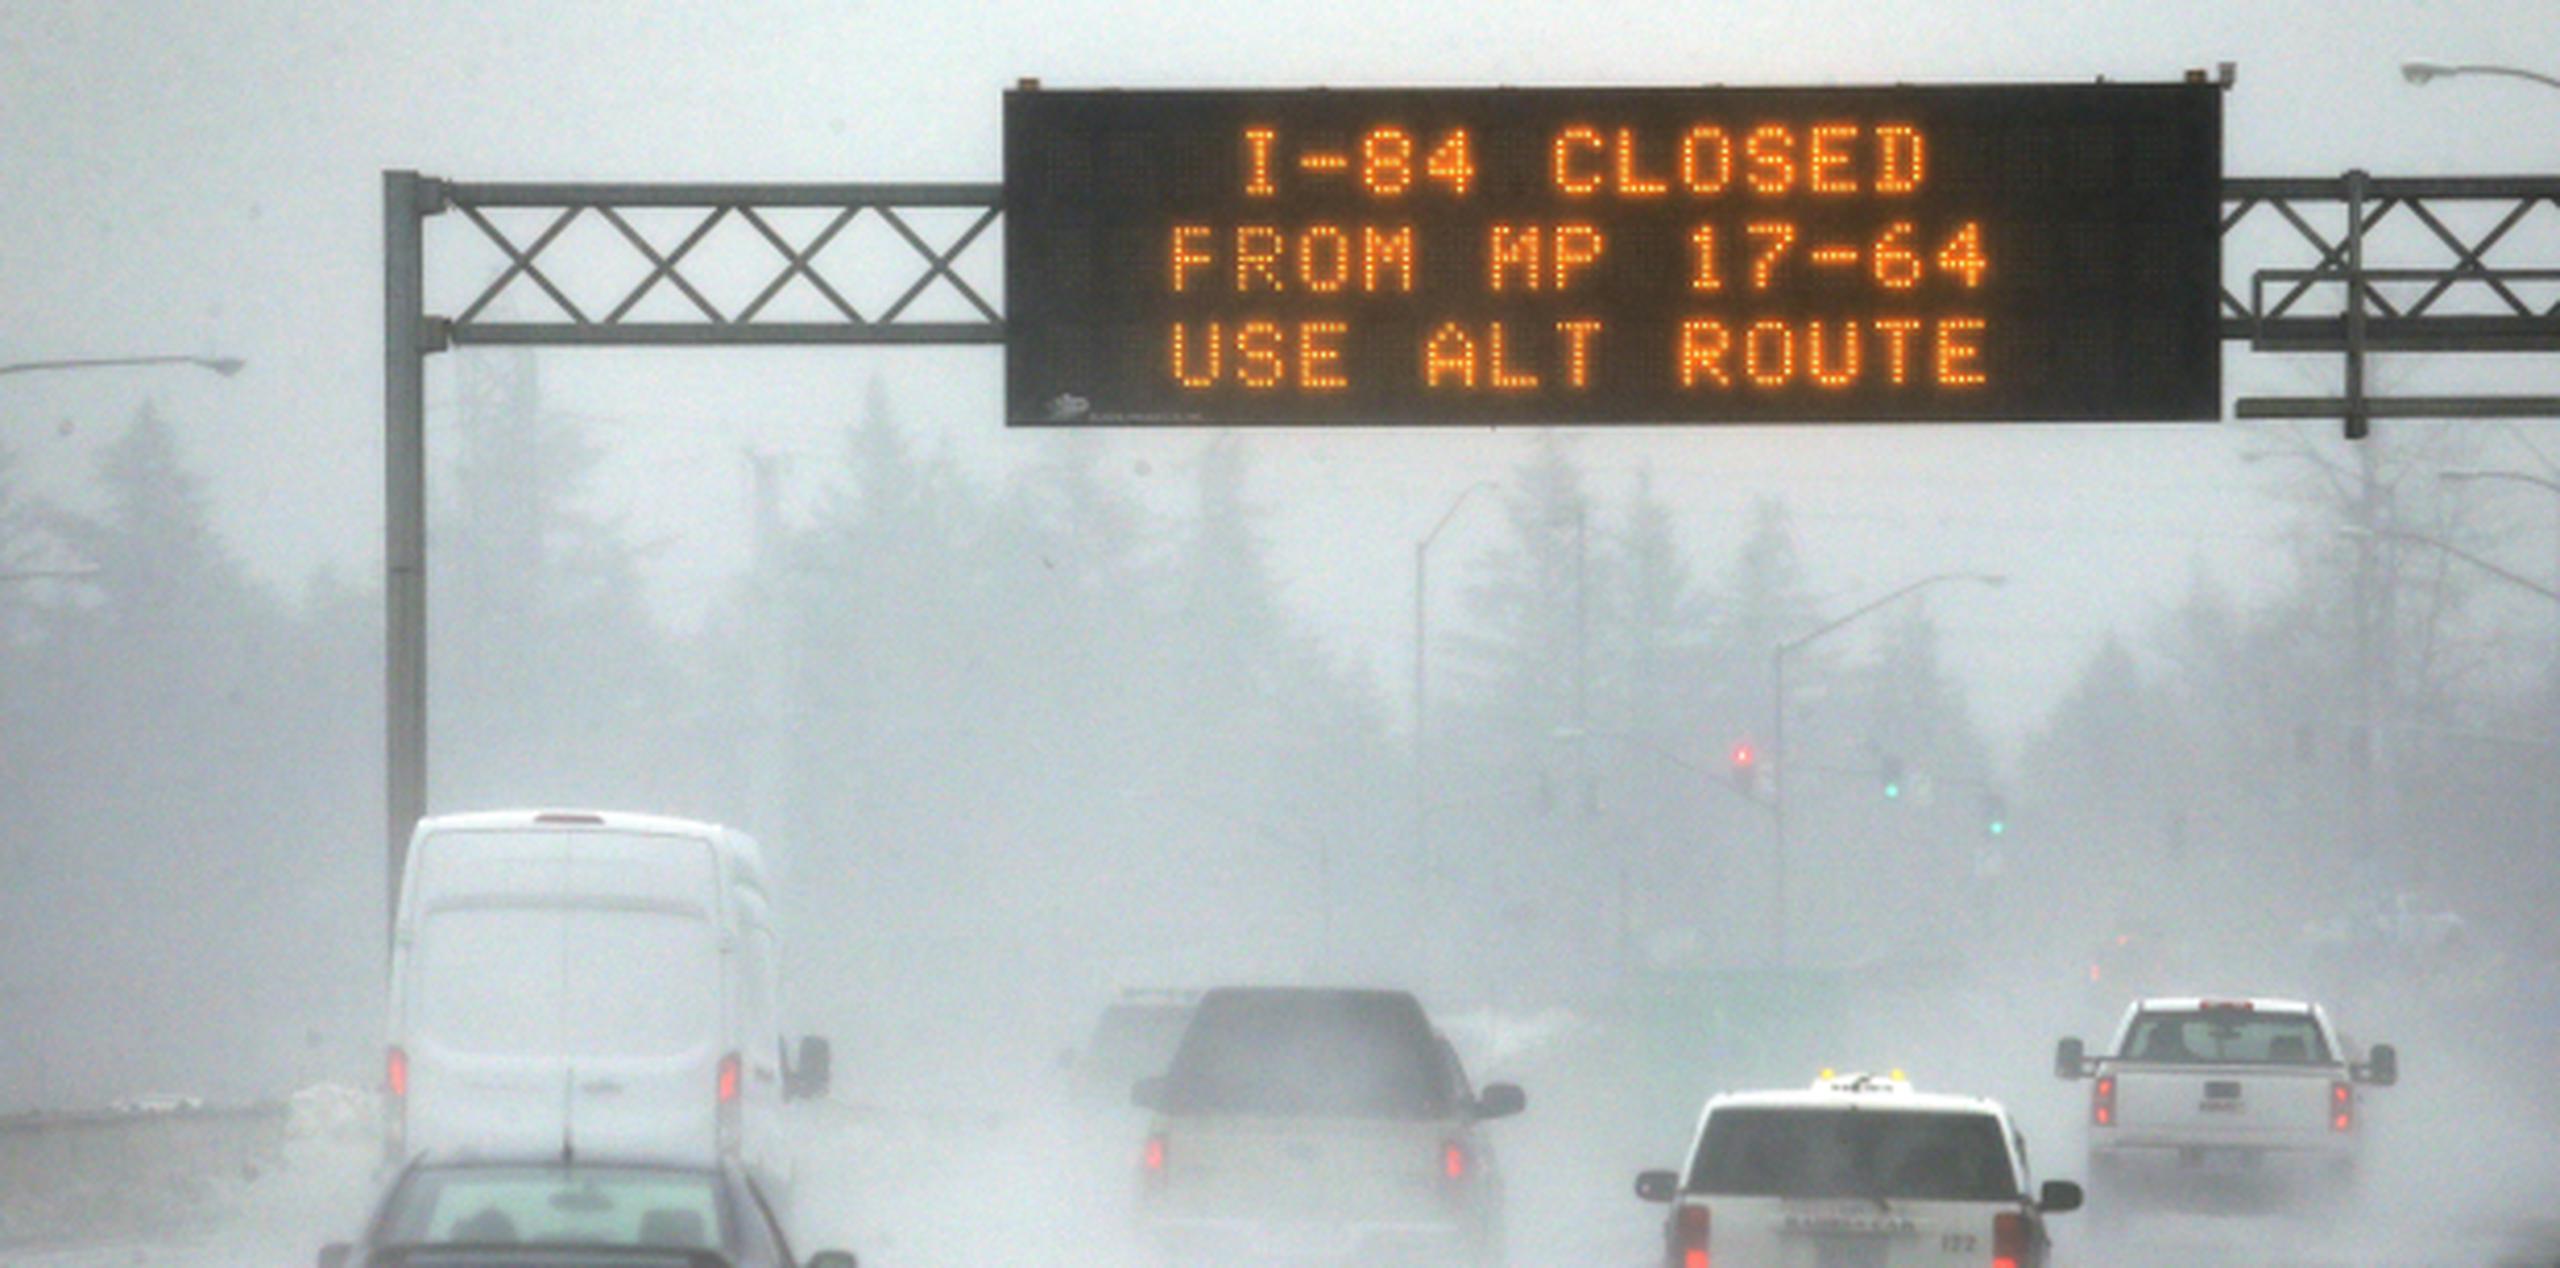 Las autoridades advirtieron a automovilistas de Idaho que no se dirigieran al oeste hacia Oregon sobre la autopista. (AP)